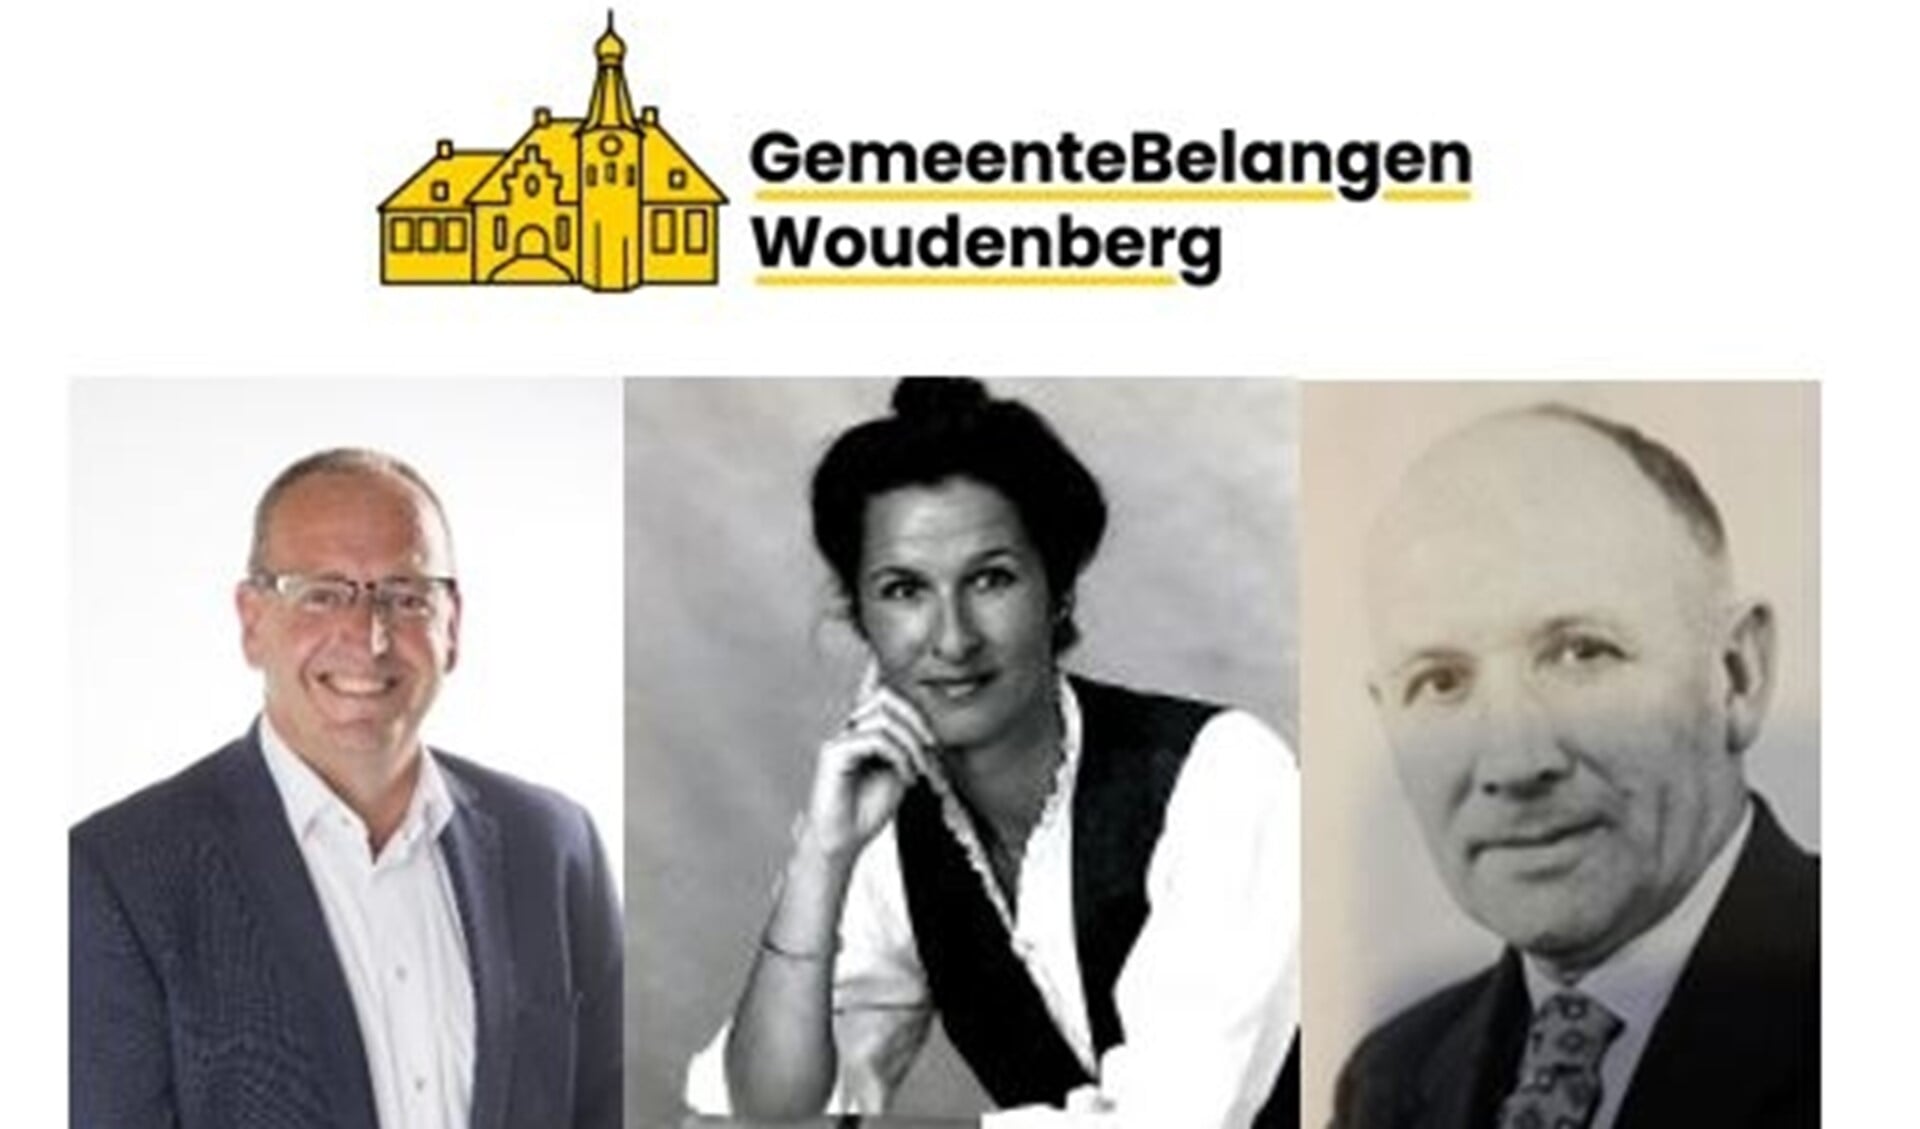 Wethouders D.P de Kruif, J. Ravenstein - van Endhoven en J. ter Maaten